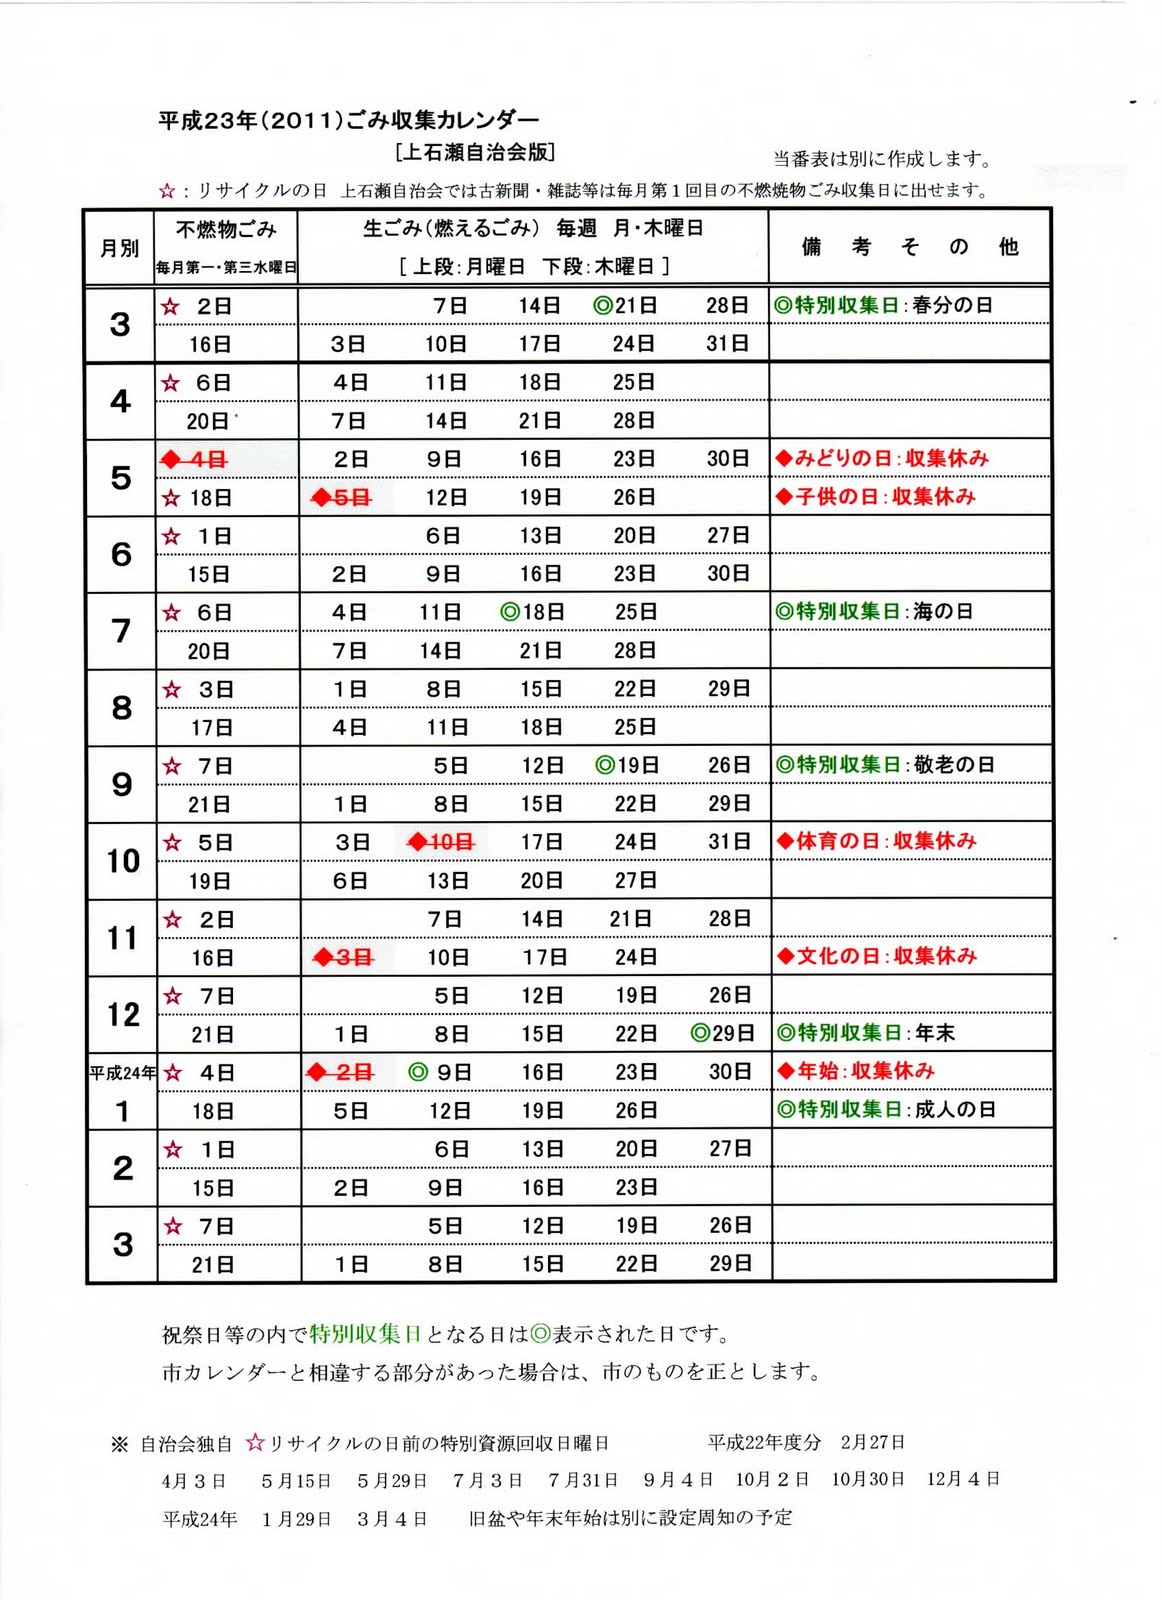 上石瀬自治会 平成23年度上石瀬版ごみカレンダー